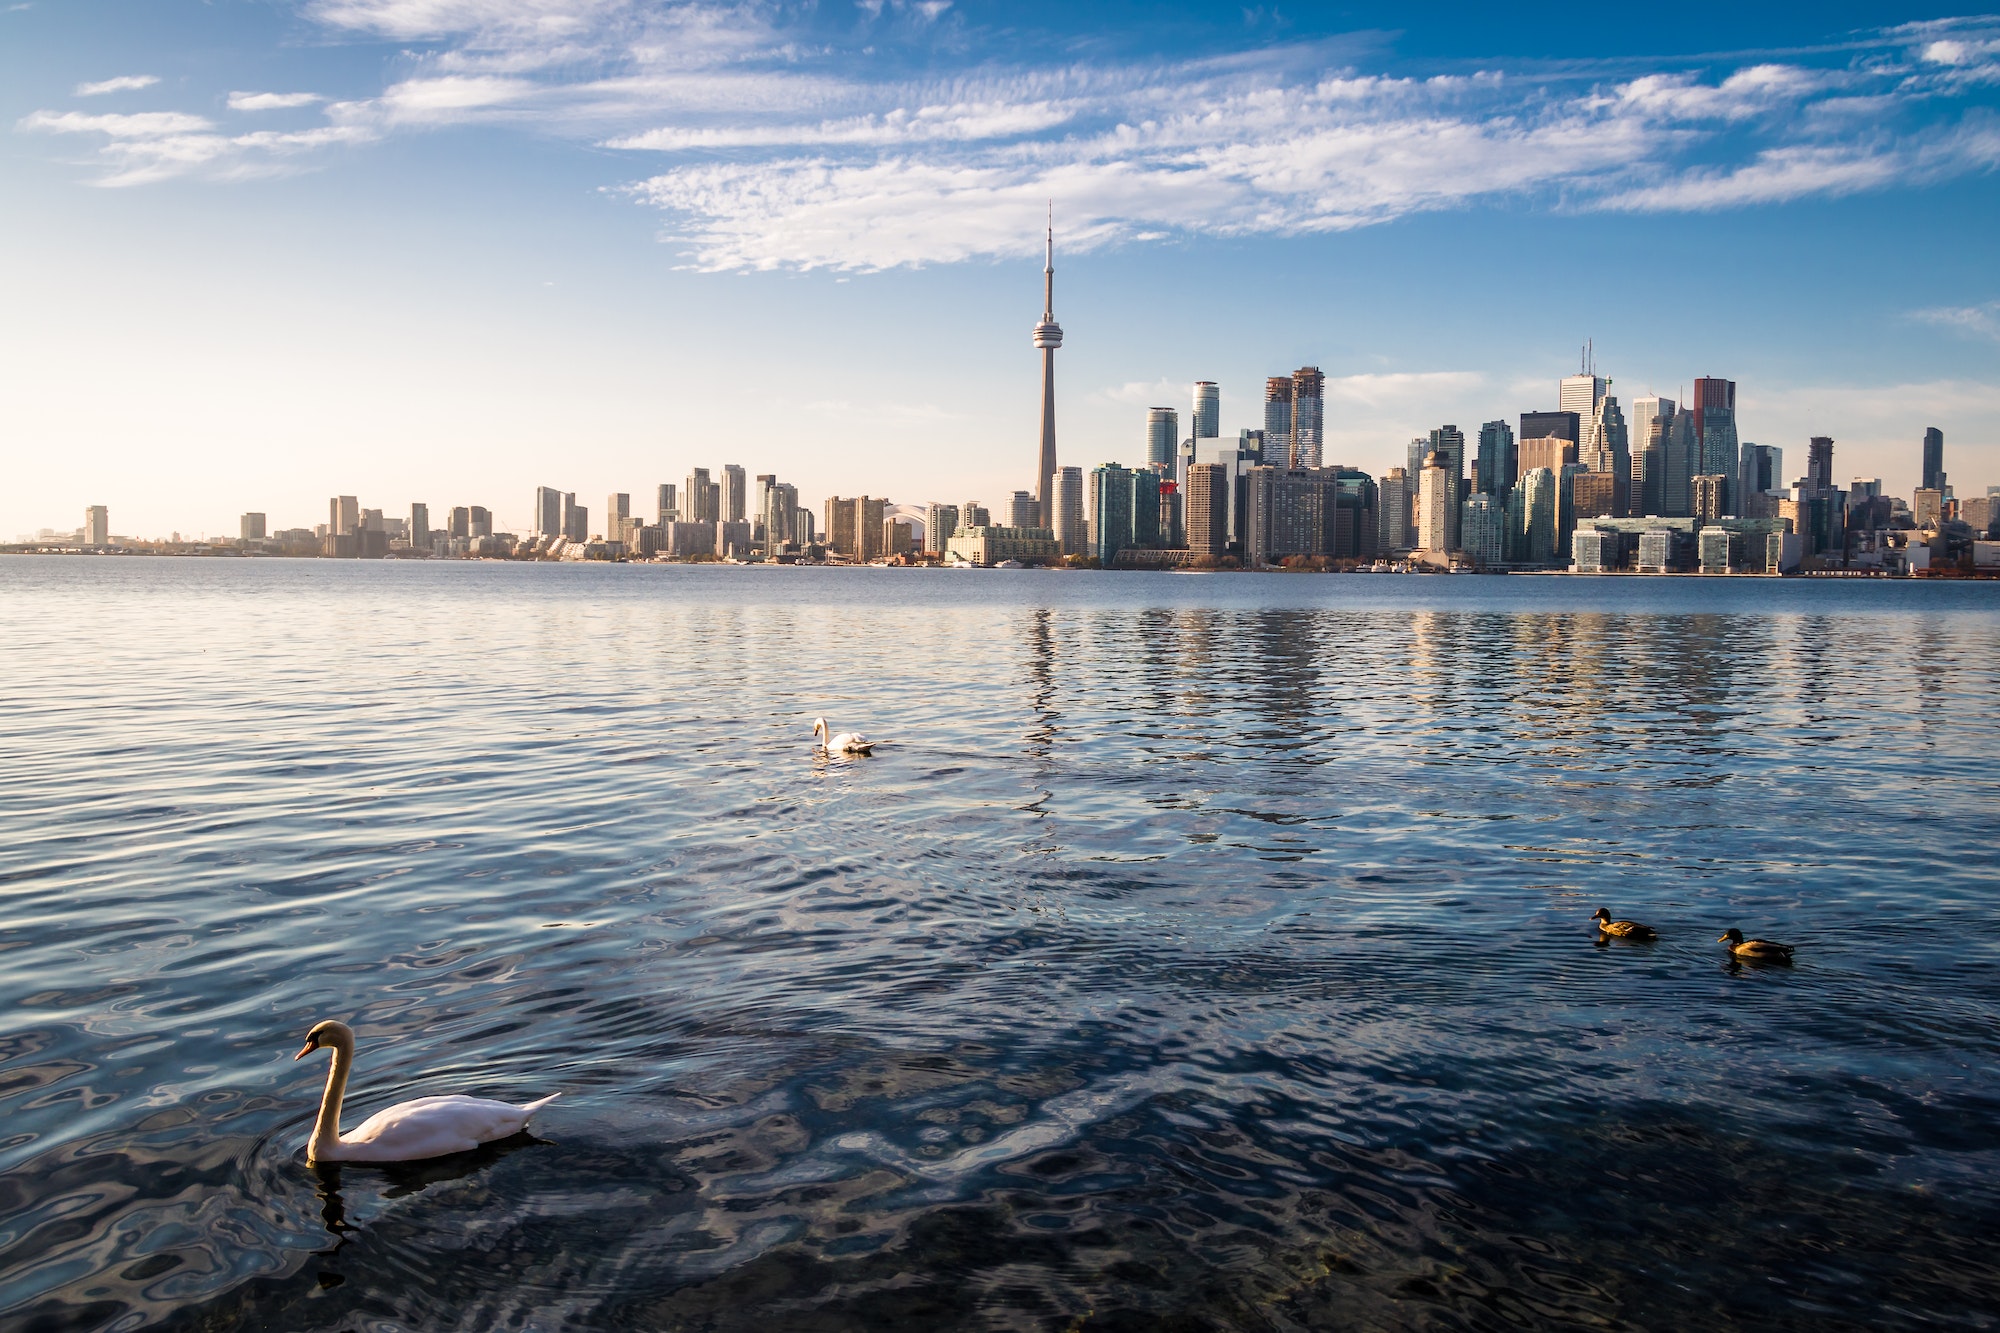 Toronto Skyline and swans swimming on Ontario lake - Toronto, Ontario, Canada